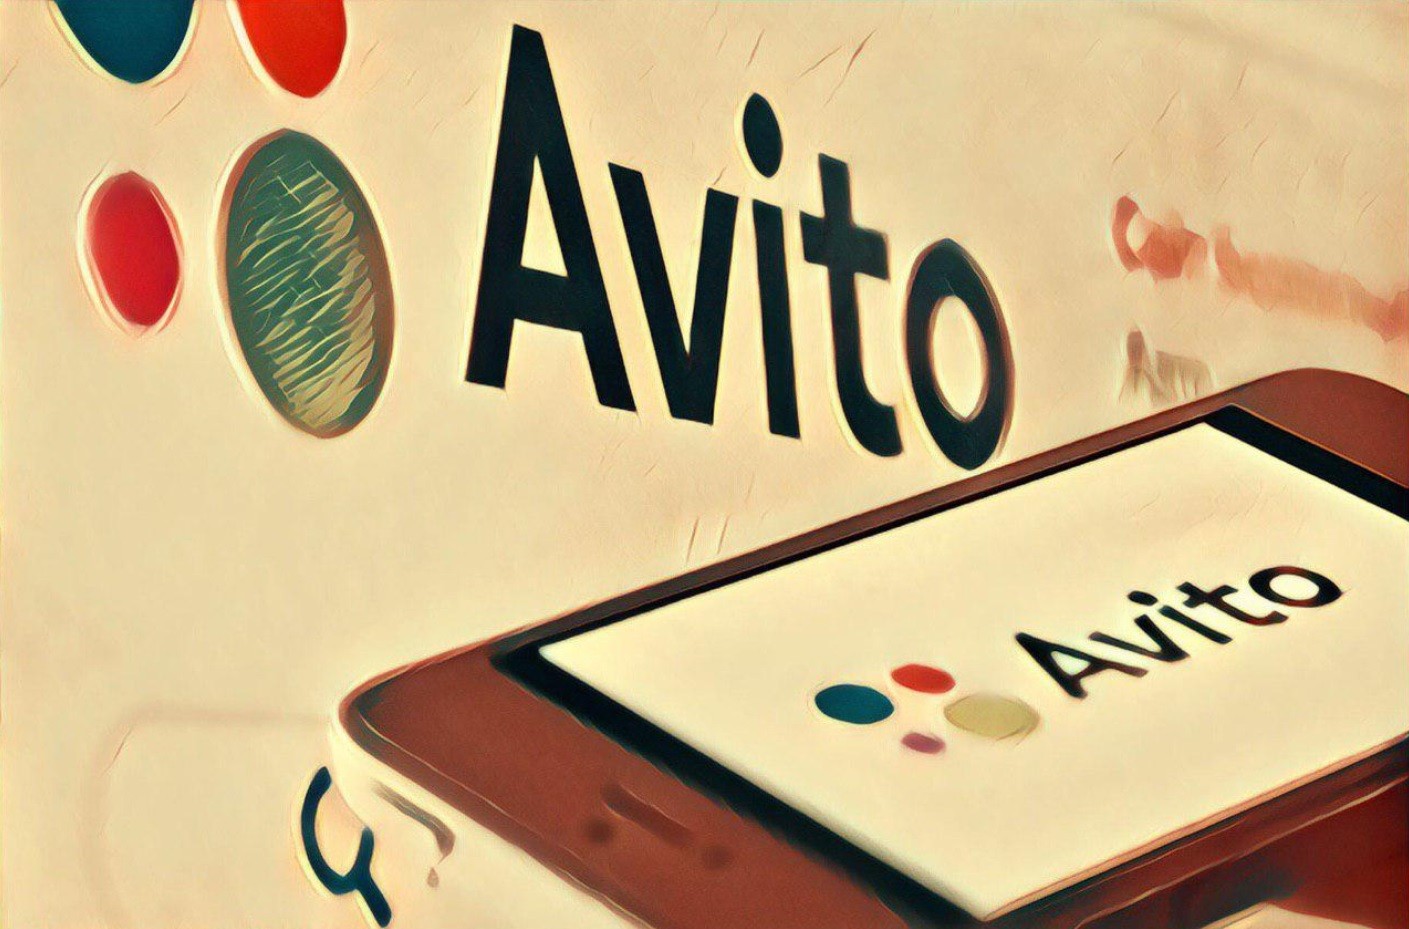 Le propriétaire et principal actionnaire d'OLX, Avito, se retire des activités russes et vend des actions du plus grand site publicitaire de Russie